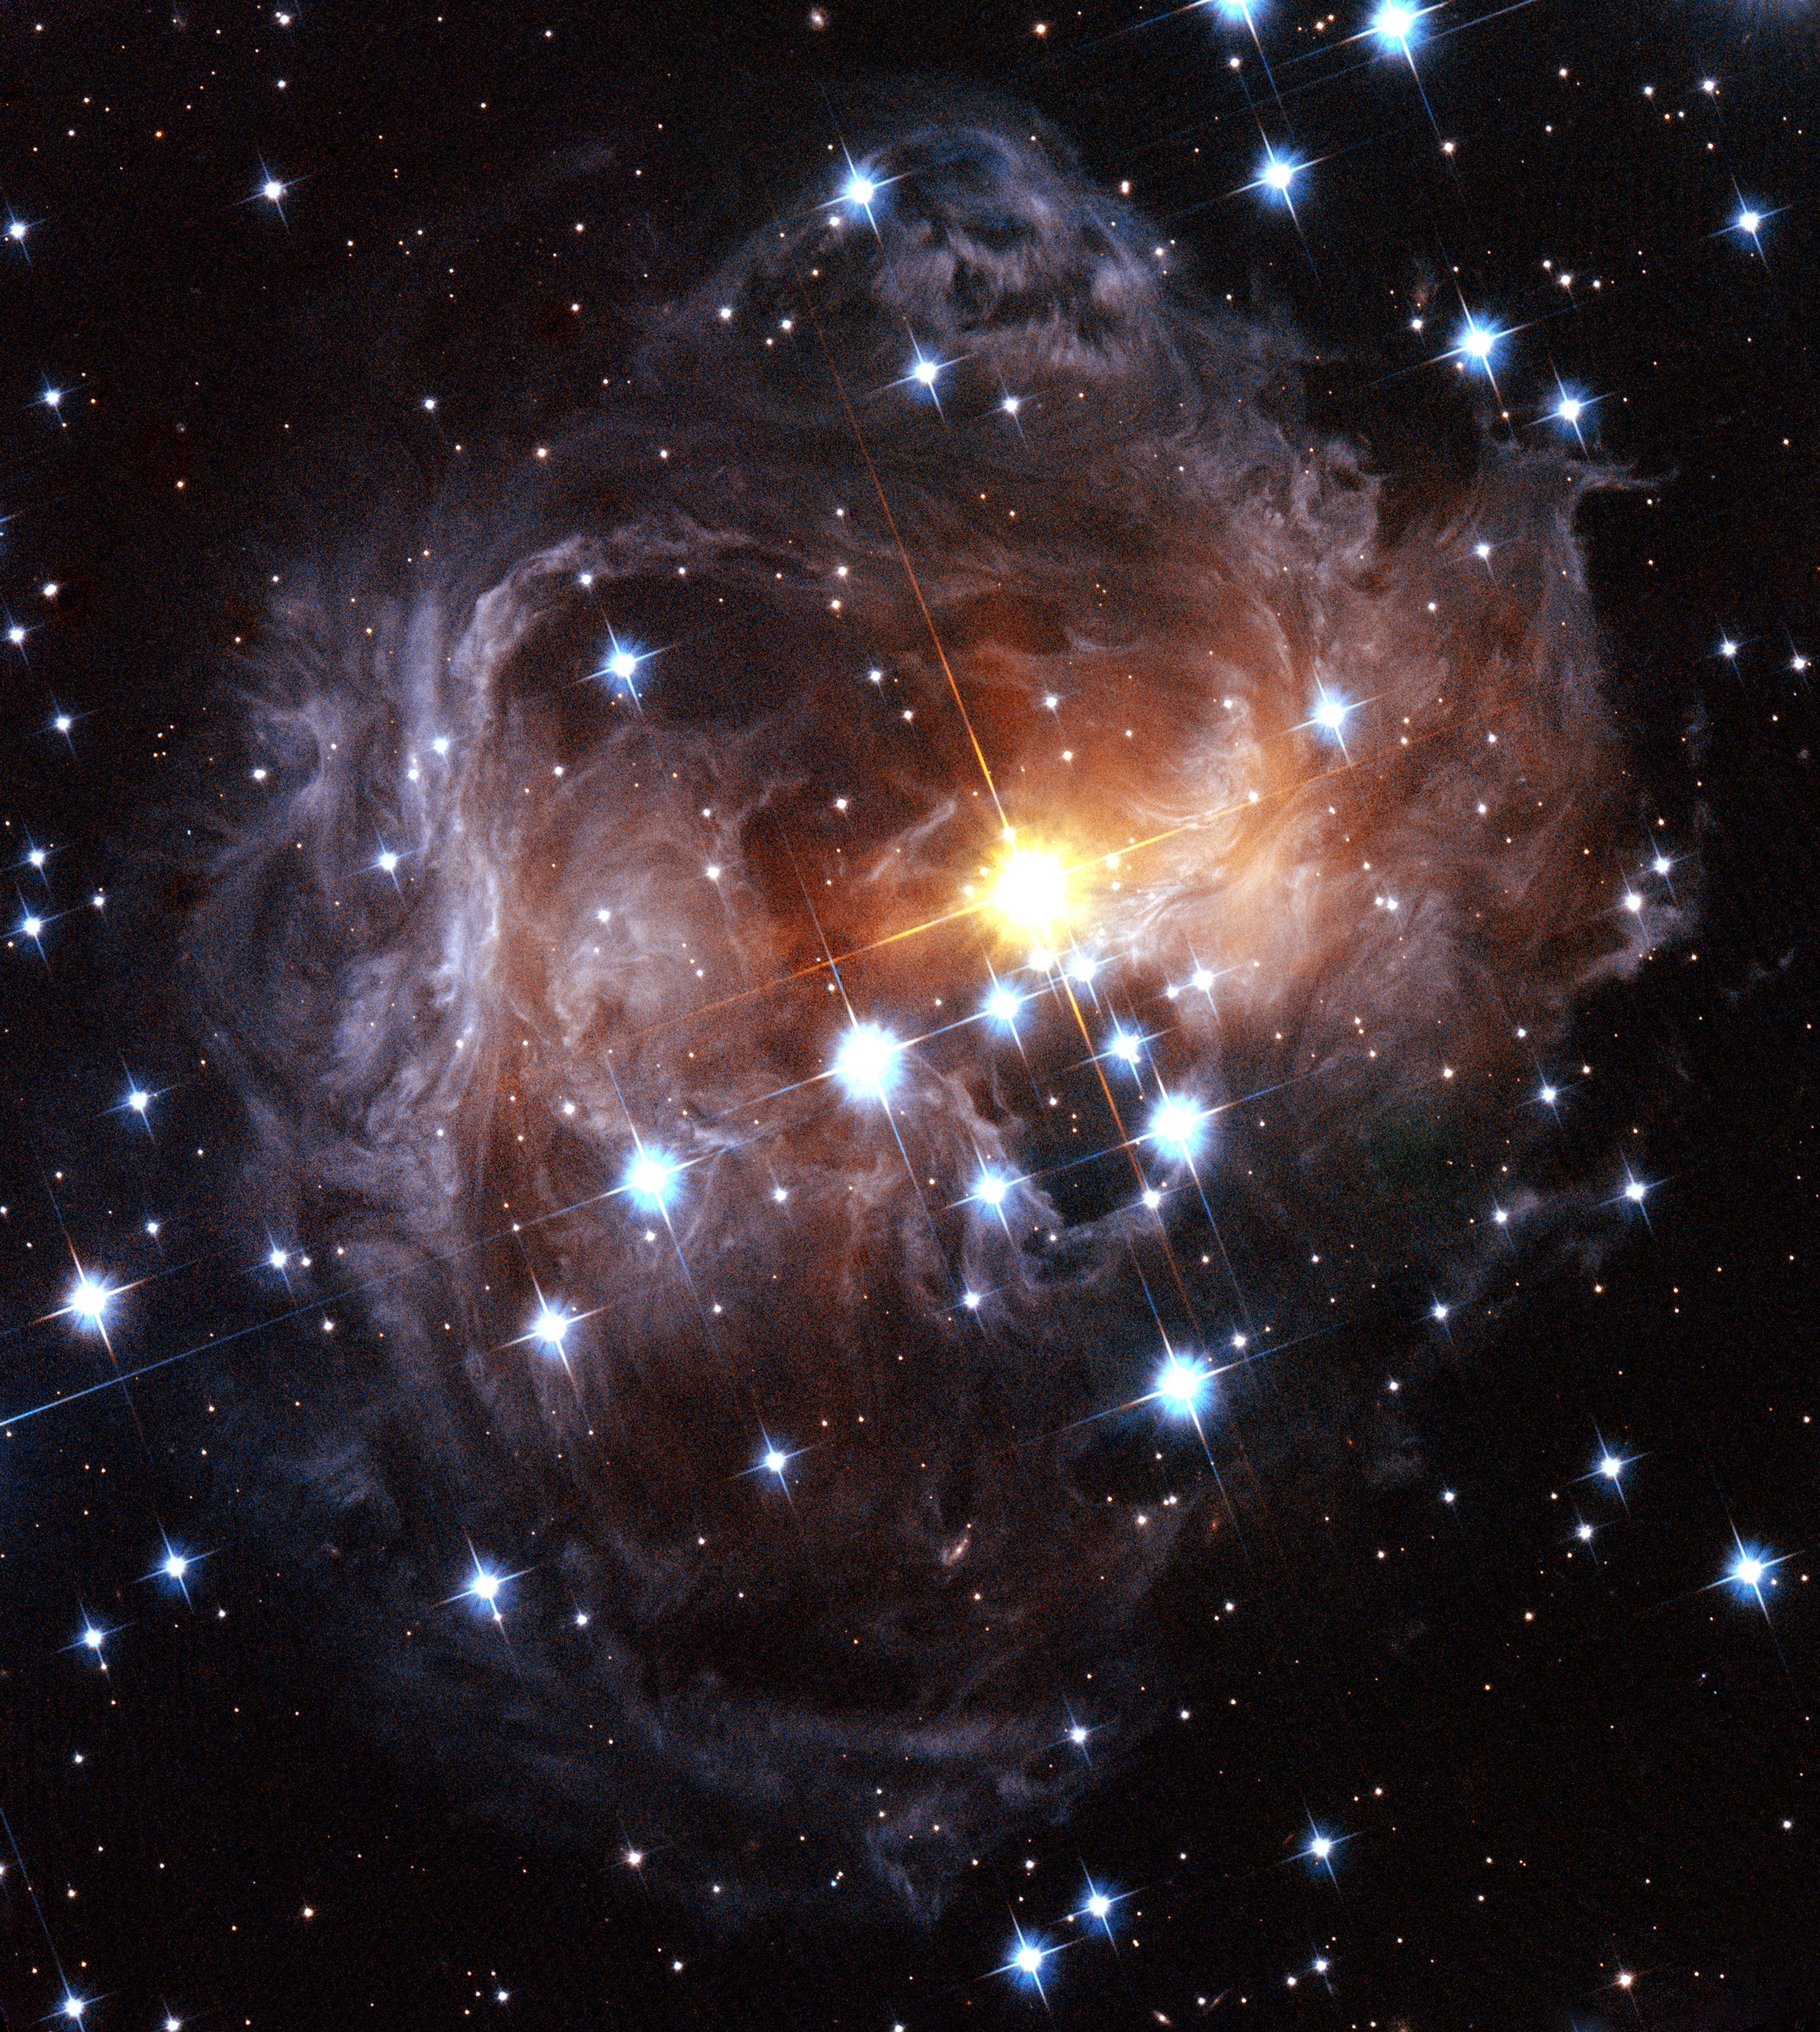 V838 Monocerotis light echo (HST, November 2005)